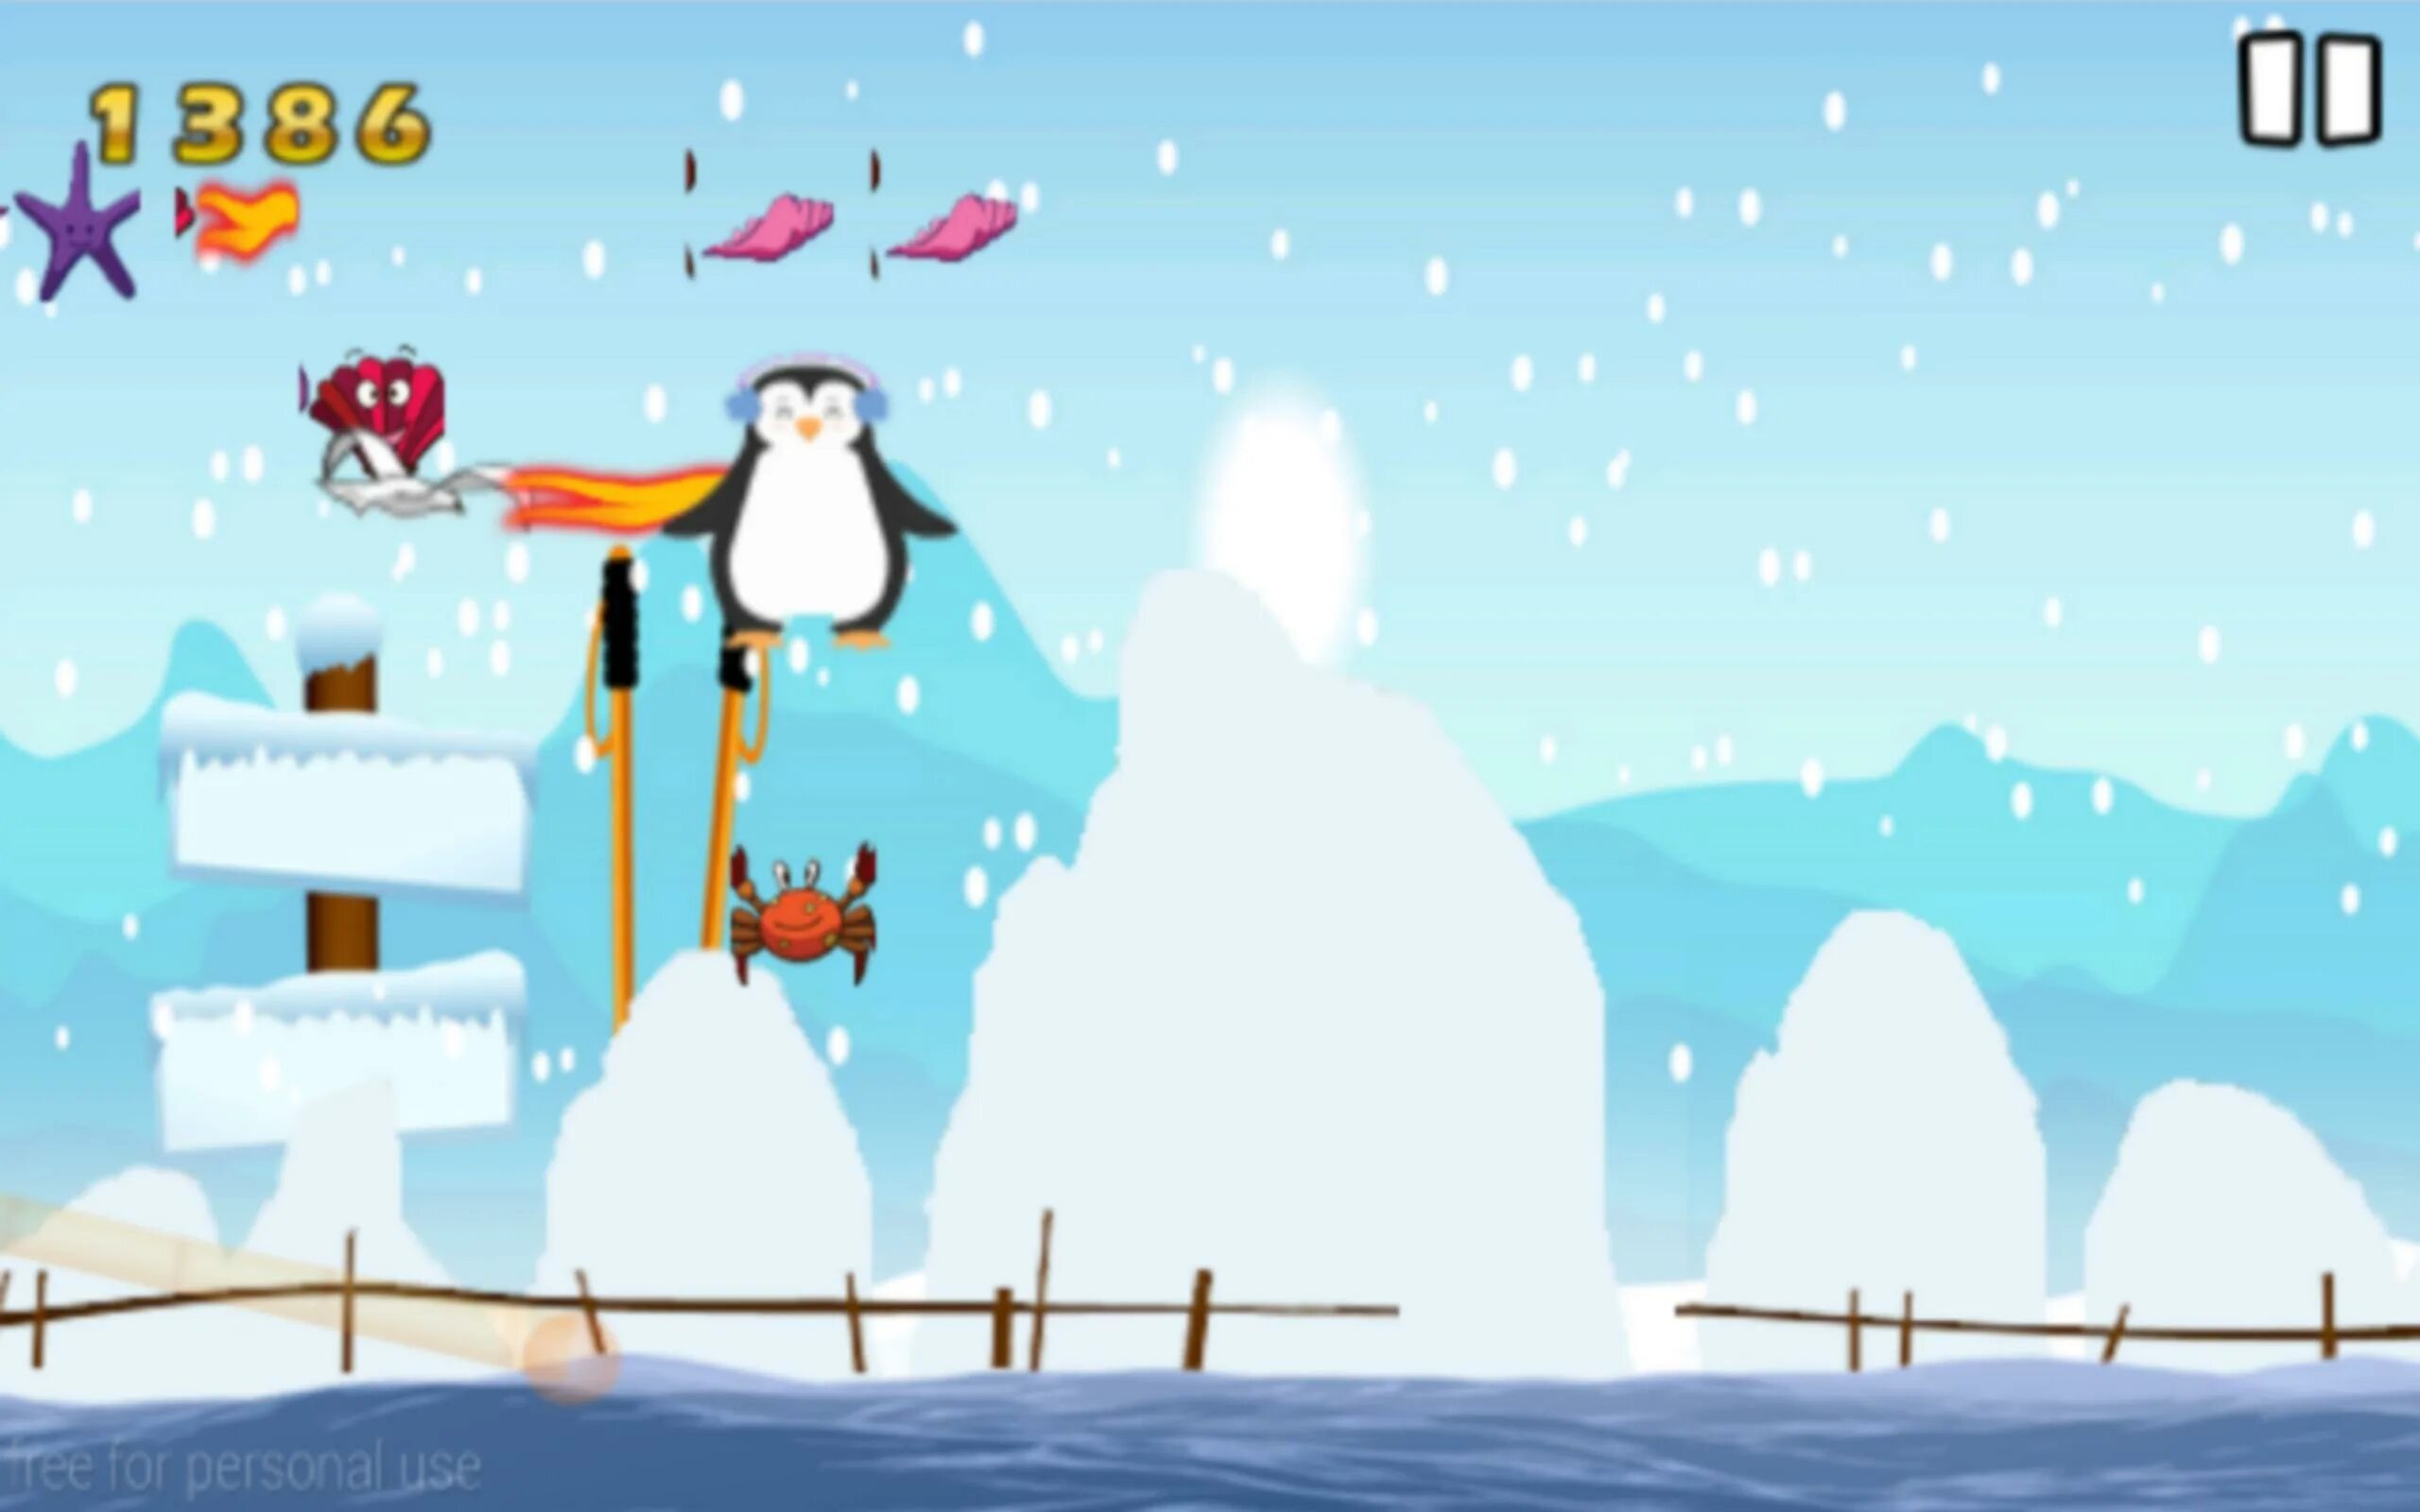 Игра Penguin Jump. Прыжки пингвина игра. Игра Пингвин Android. Игра прыгающих пингвинов на верёвке. Игра пингвина битой